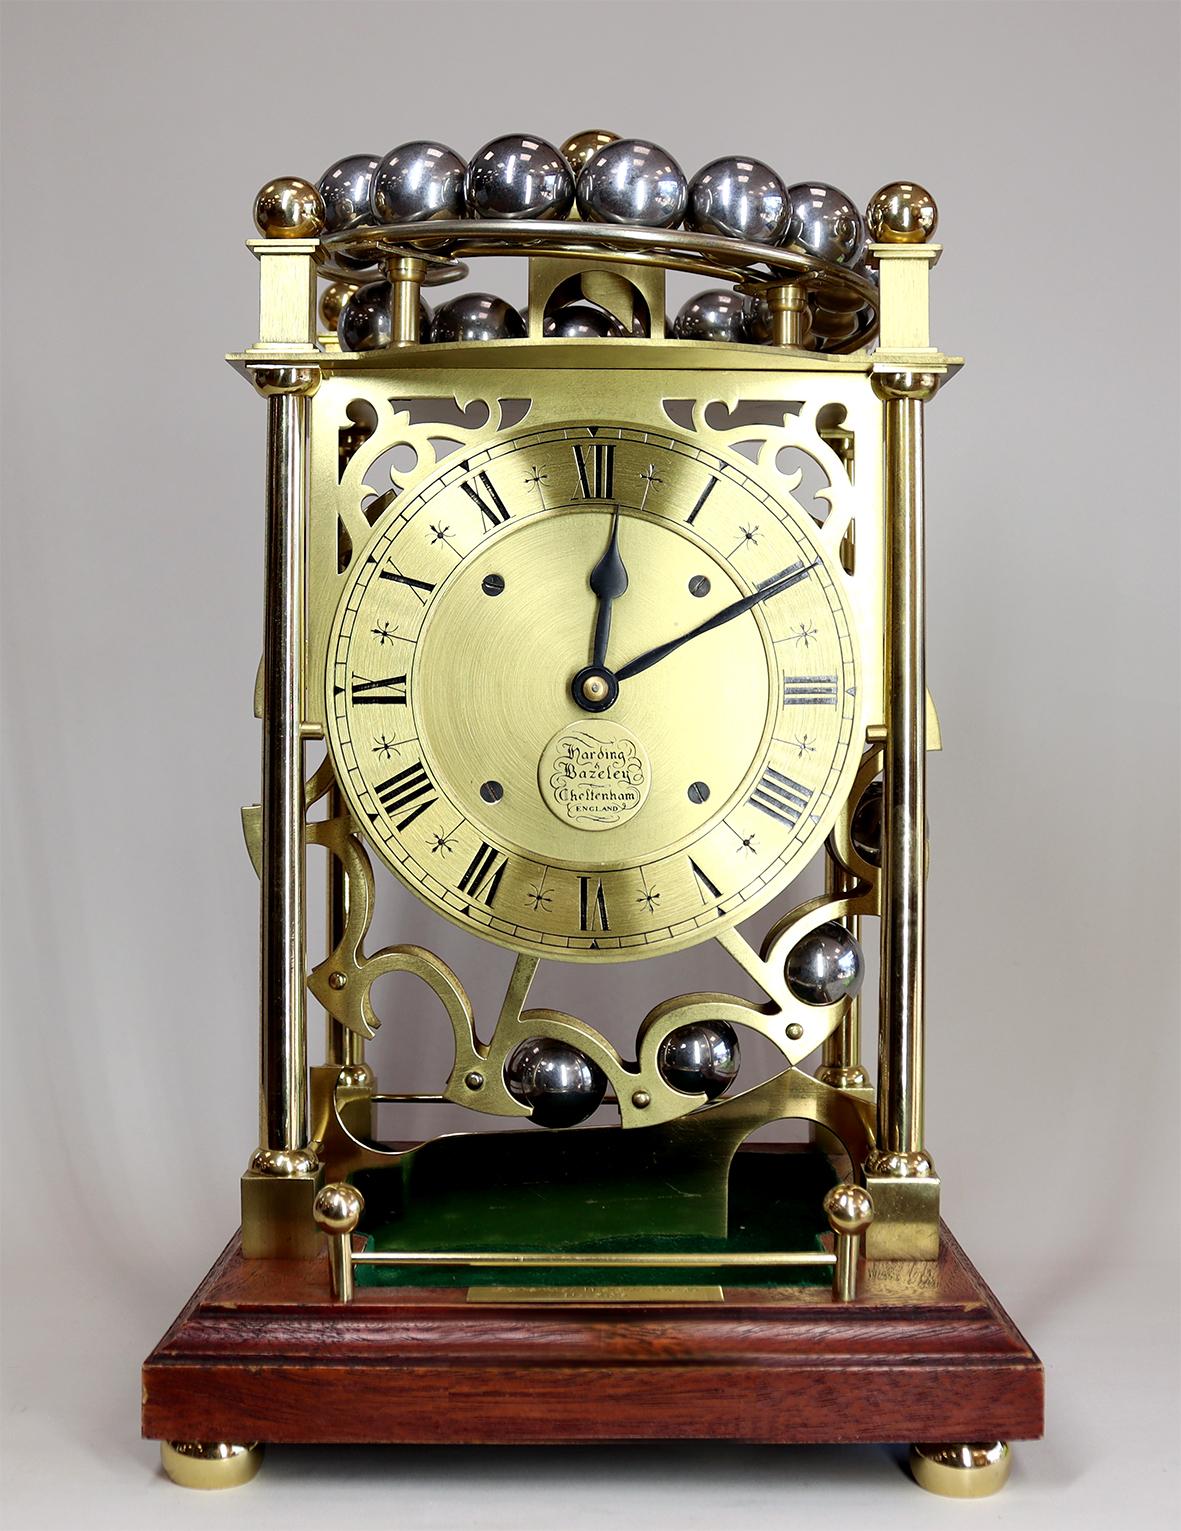 Il s'agit d'une horloge de fantaisie de la seconde moitié du XXe siècle, alimentée par le poids de ses vingt-quatre roulements à billes en acier qui descendent autour de la roue du carrousel et sont déposés dans la cuvette verte située à la base du